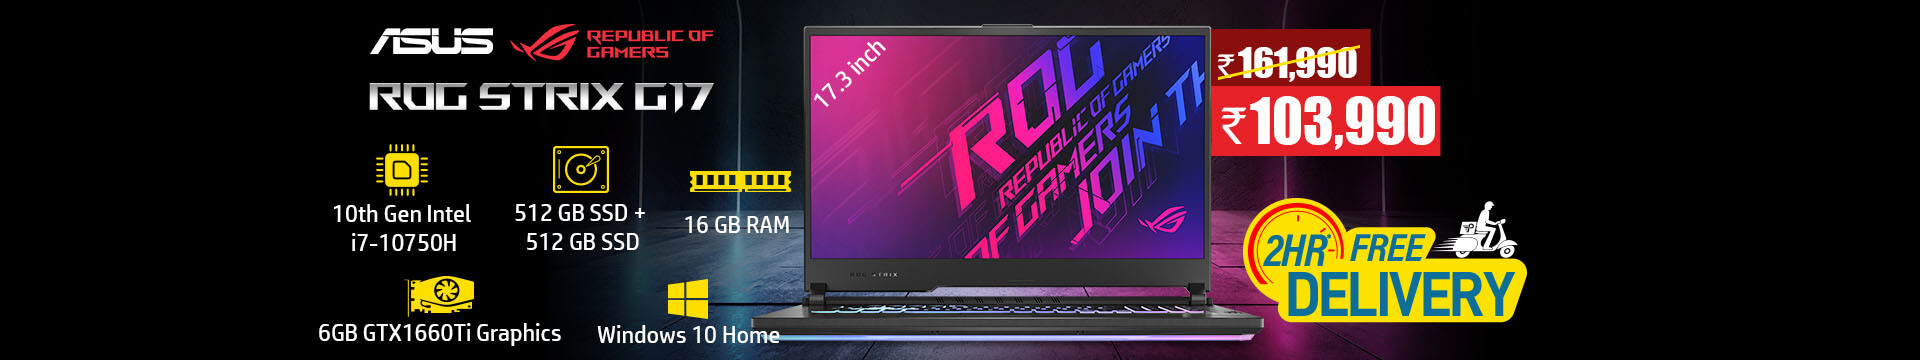 Asus ROG Strix G17 G712LU-EV008TS Gaming Laptop